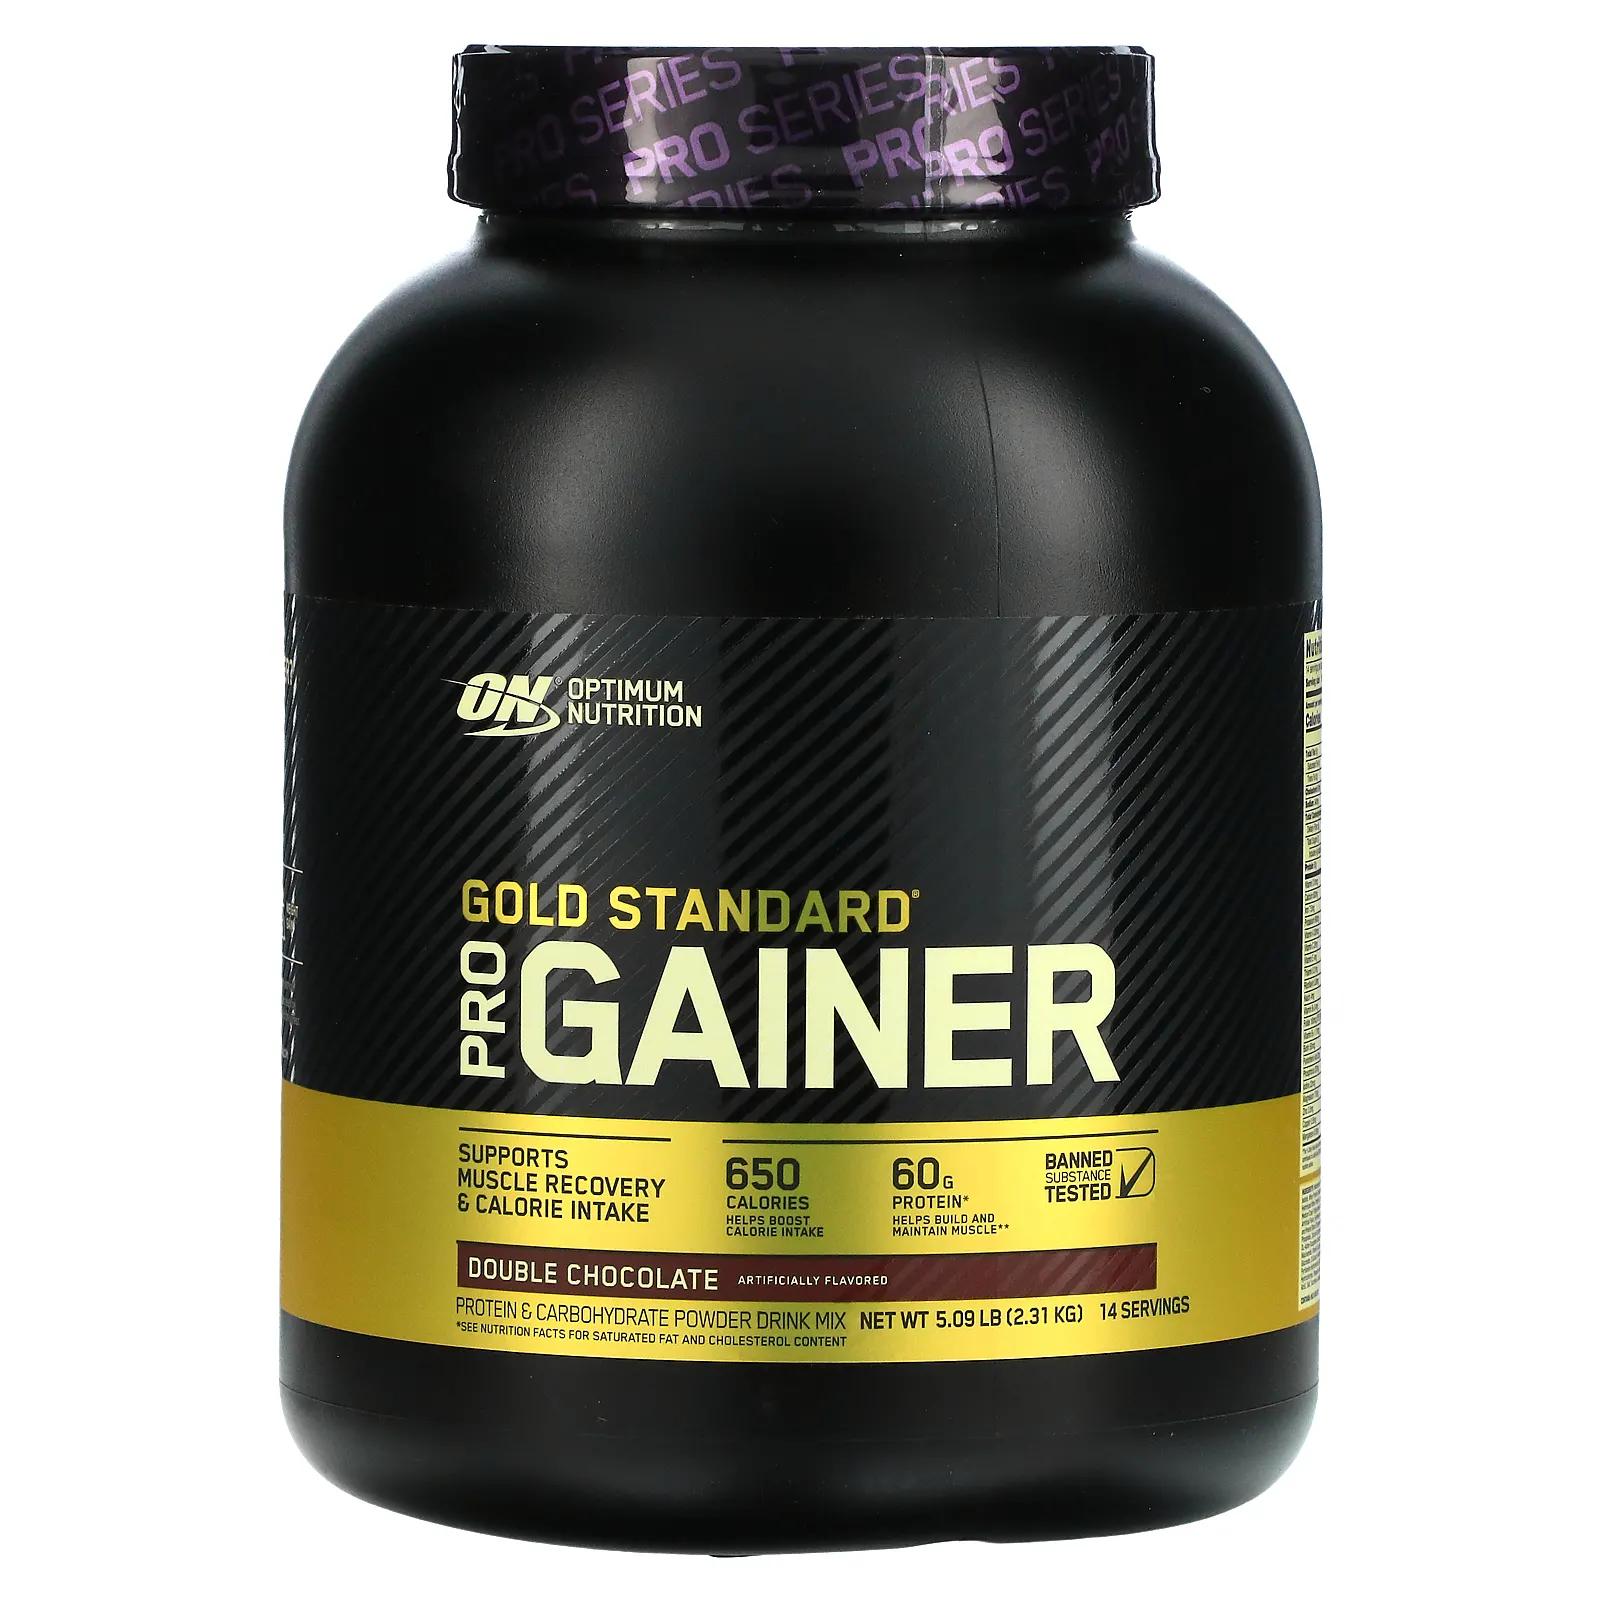 Optimum Nutrition Pro Gainer средство для набора веса (гейнер) с высоким содержанием протеина двойной шоколад 2310 г (5.09 lb) гейнер optimum nutrition pro gainer 2310 г ванильный крем